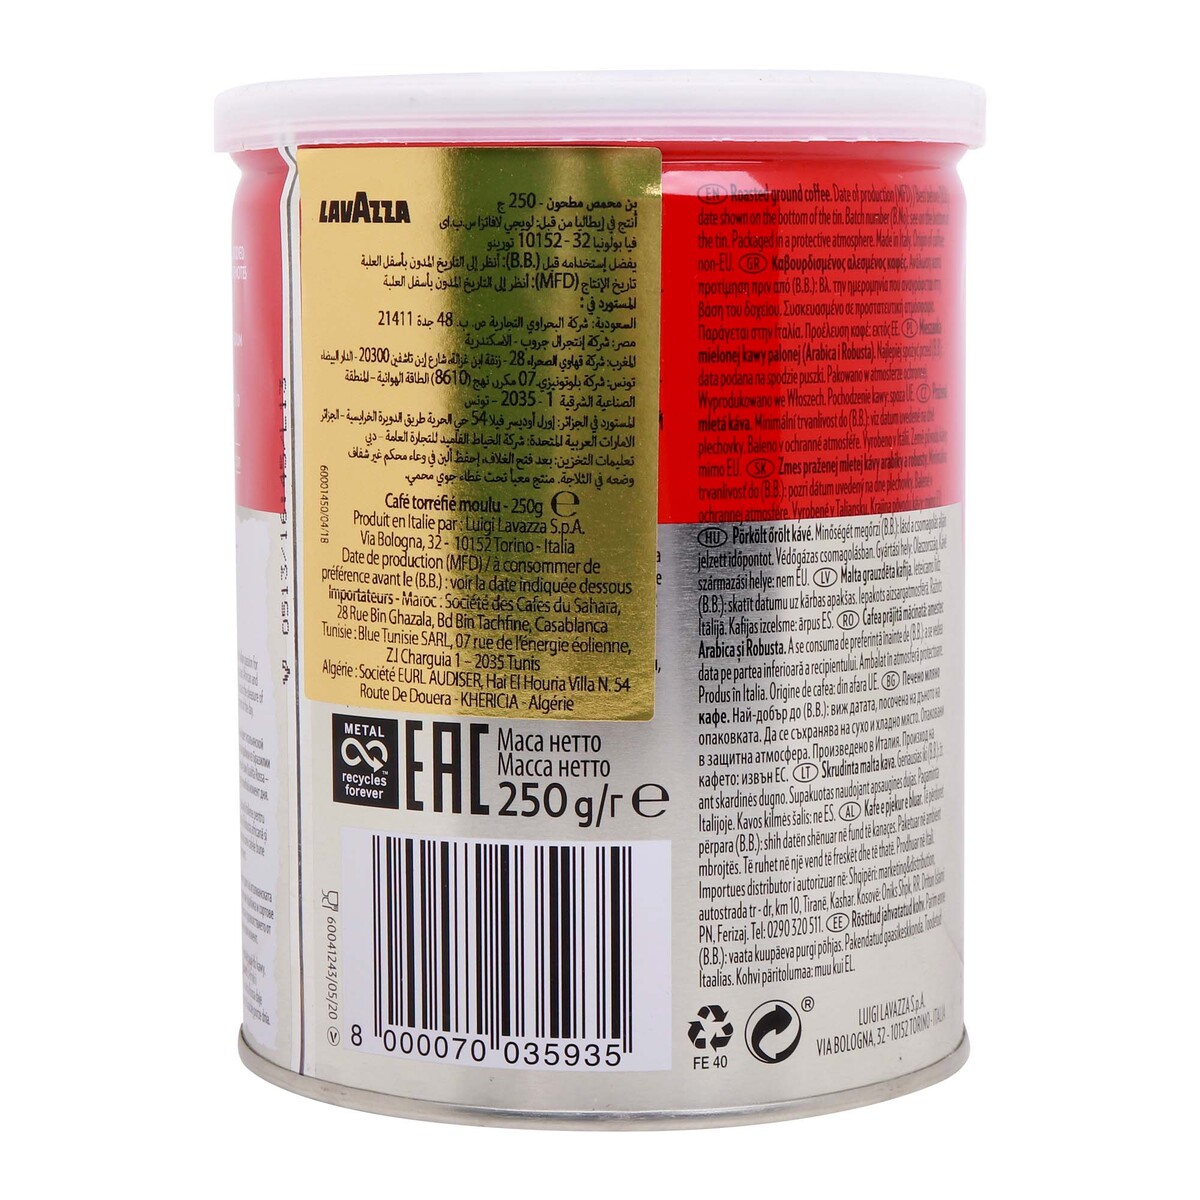 Lavazza Rossa Coffee Tin, 250 g